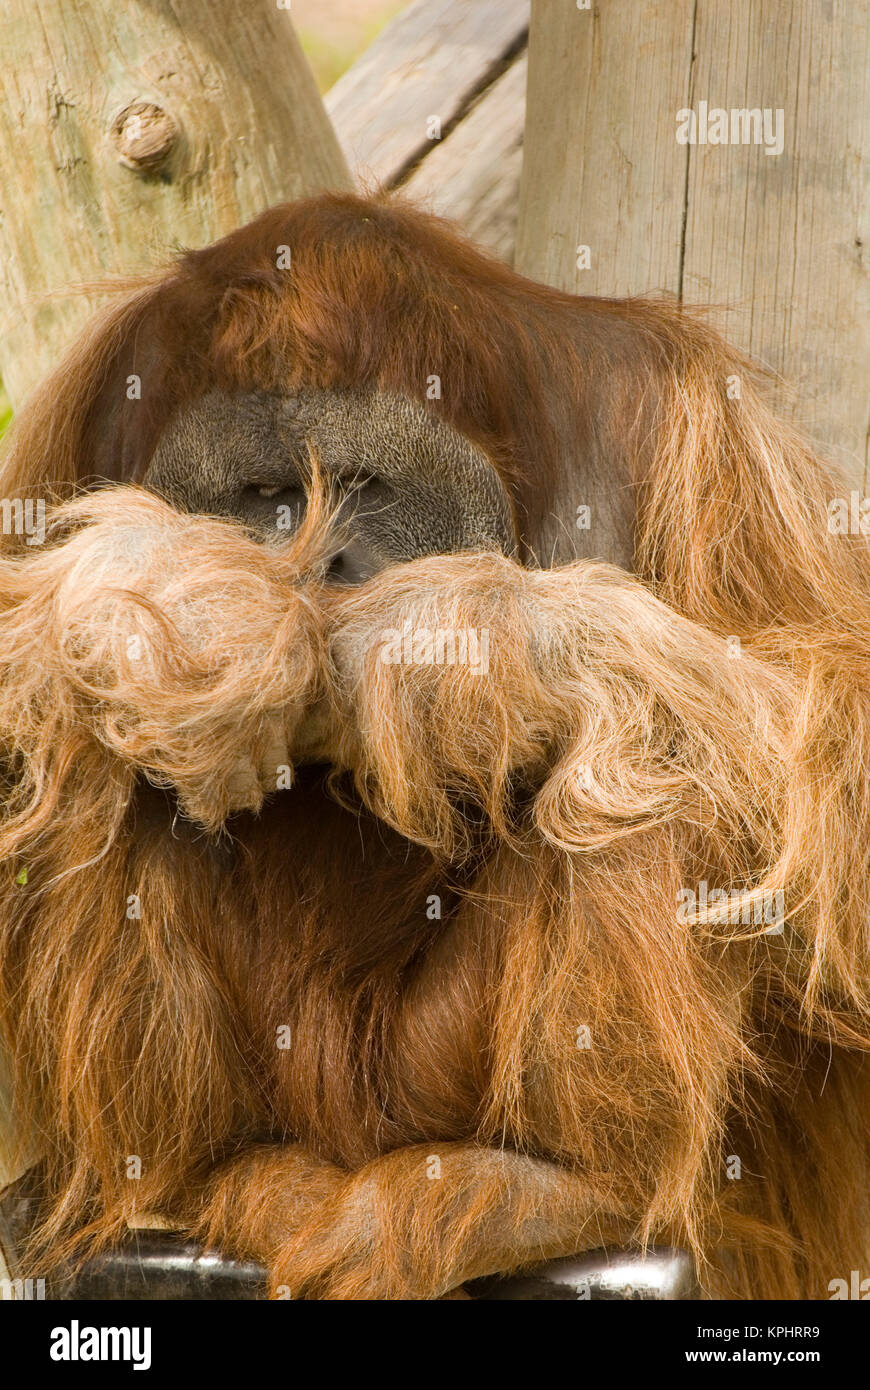 USA, NM, Albuquerque.  Orangutan sleeps in shade. Captive Stock Photo